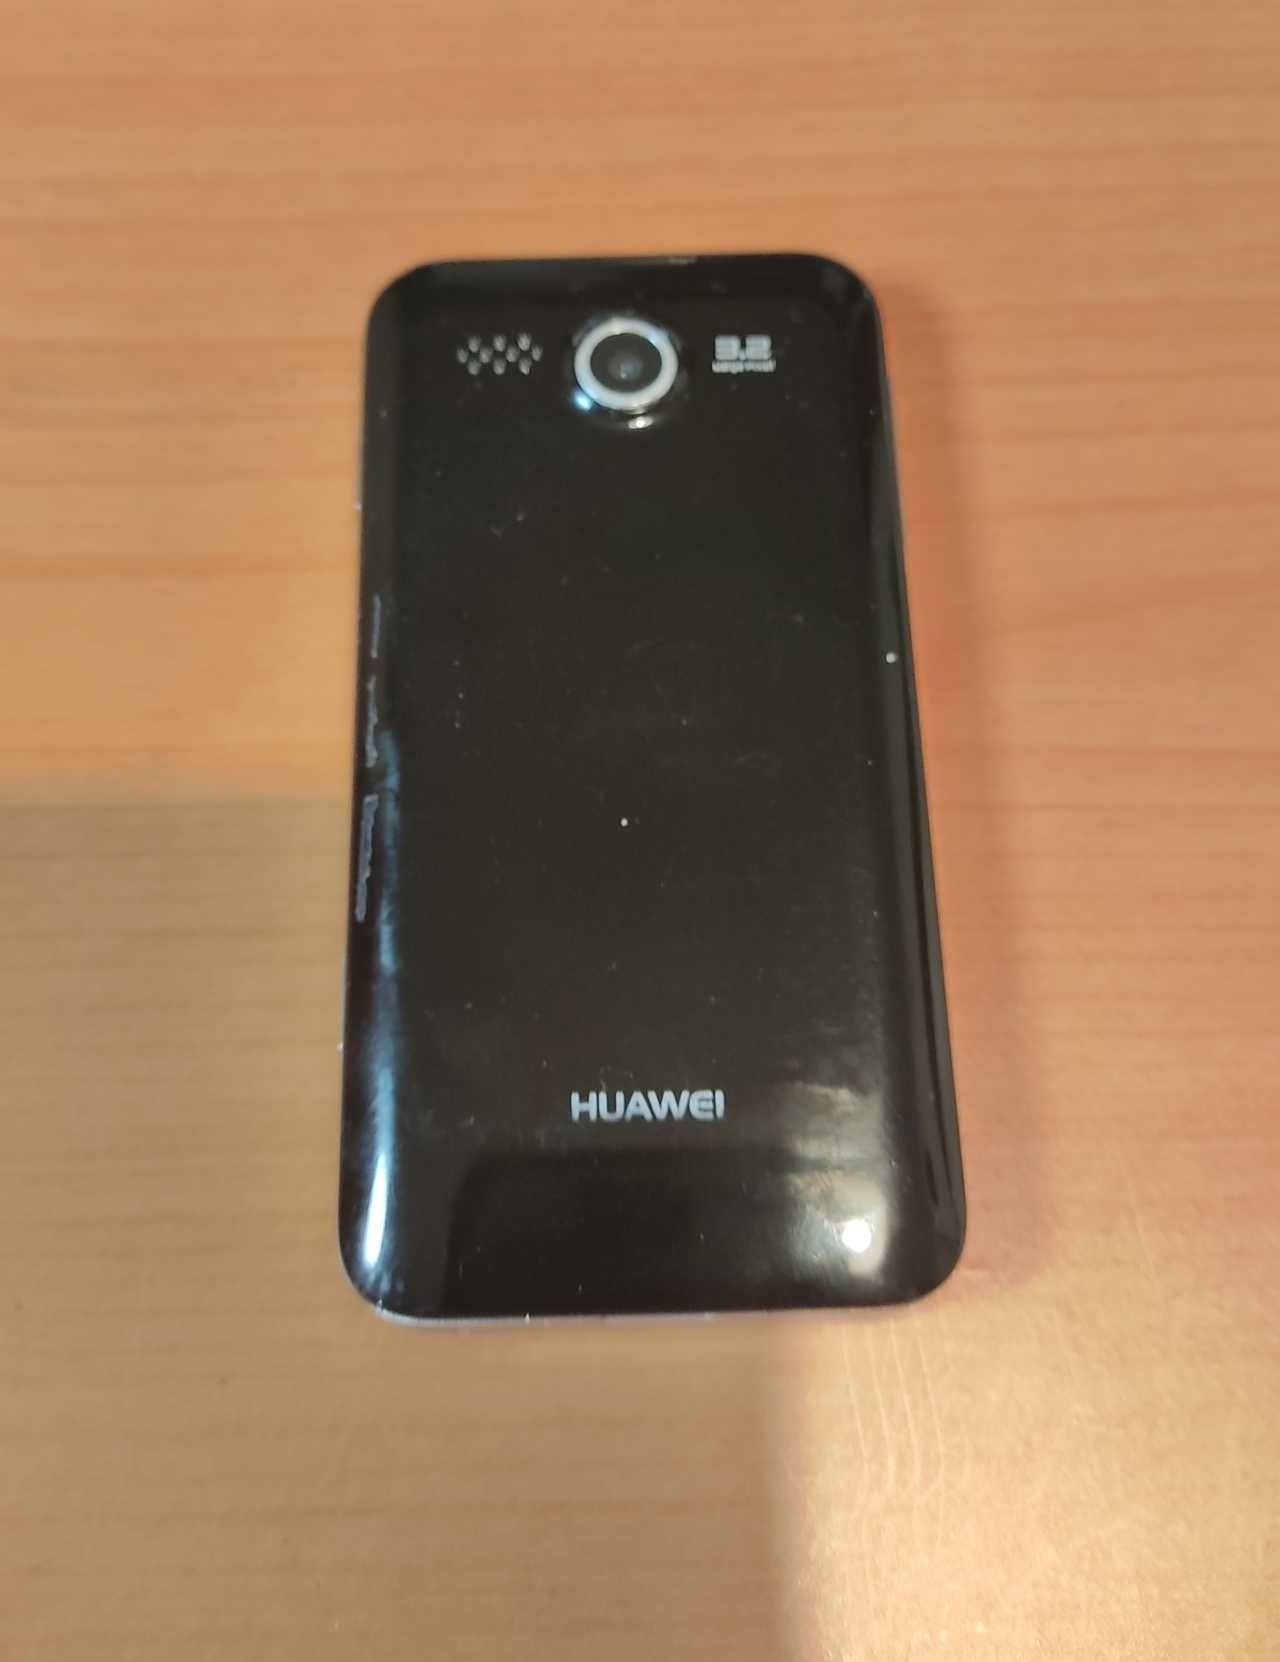 Telemóvel Huawei G7300